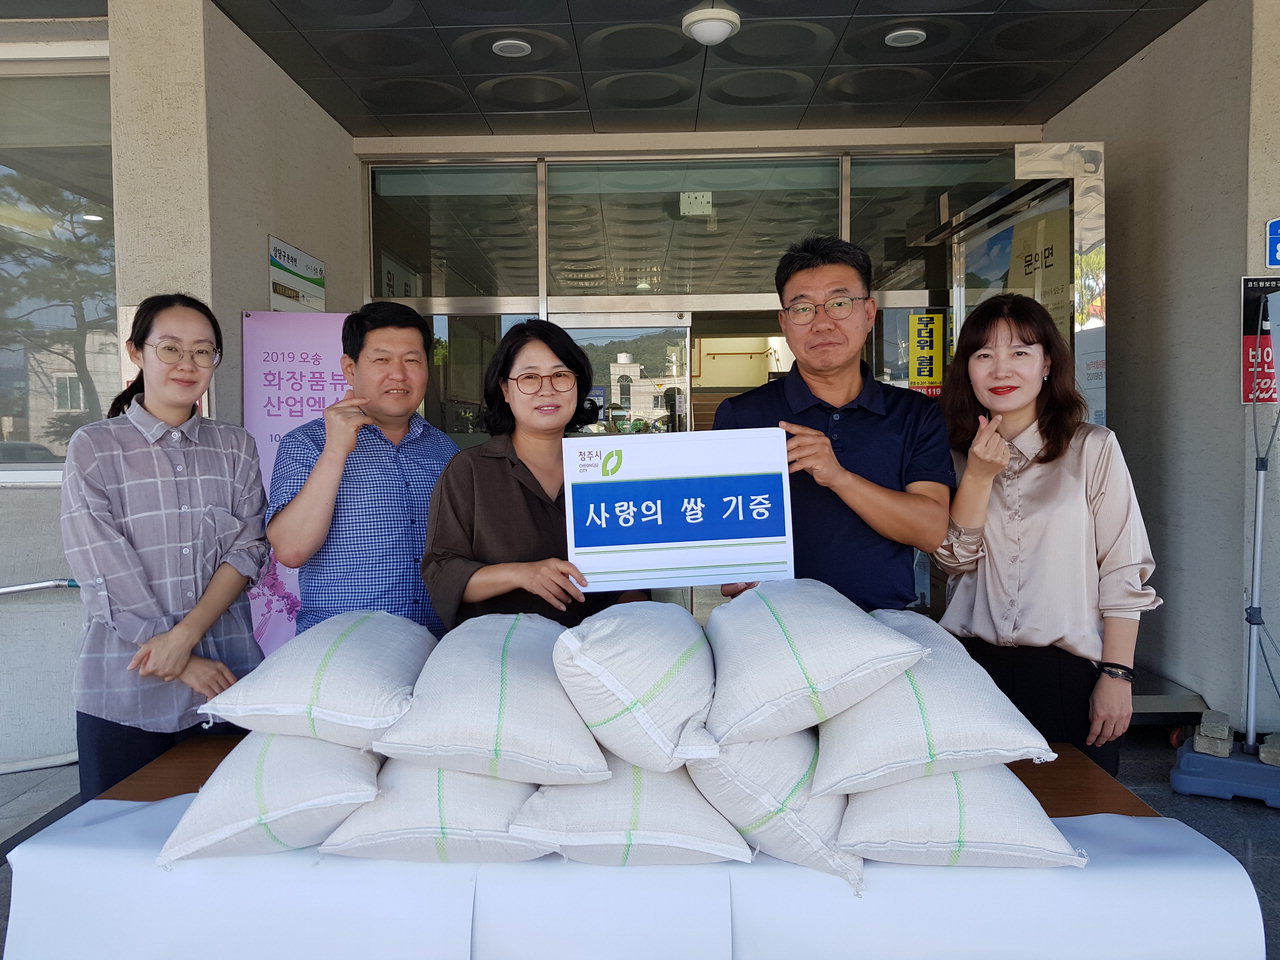 청주시 상당구 문의면 행정복지센터(면장 한승순)는 1일 이름을 밝히지 않은 기부자가 이웃돕기를 위한 20㎏ 쌀 10포(50만원 상당)를 전달했다고 밝혔다.